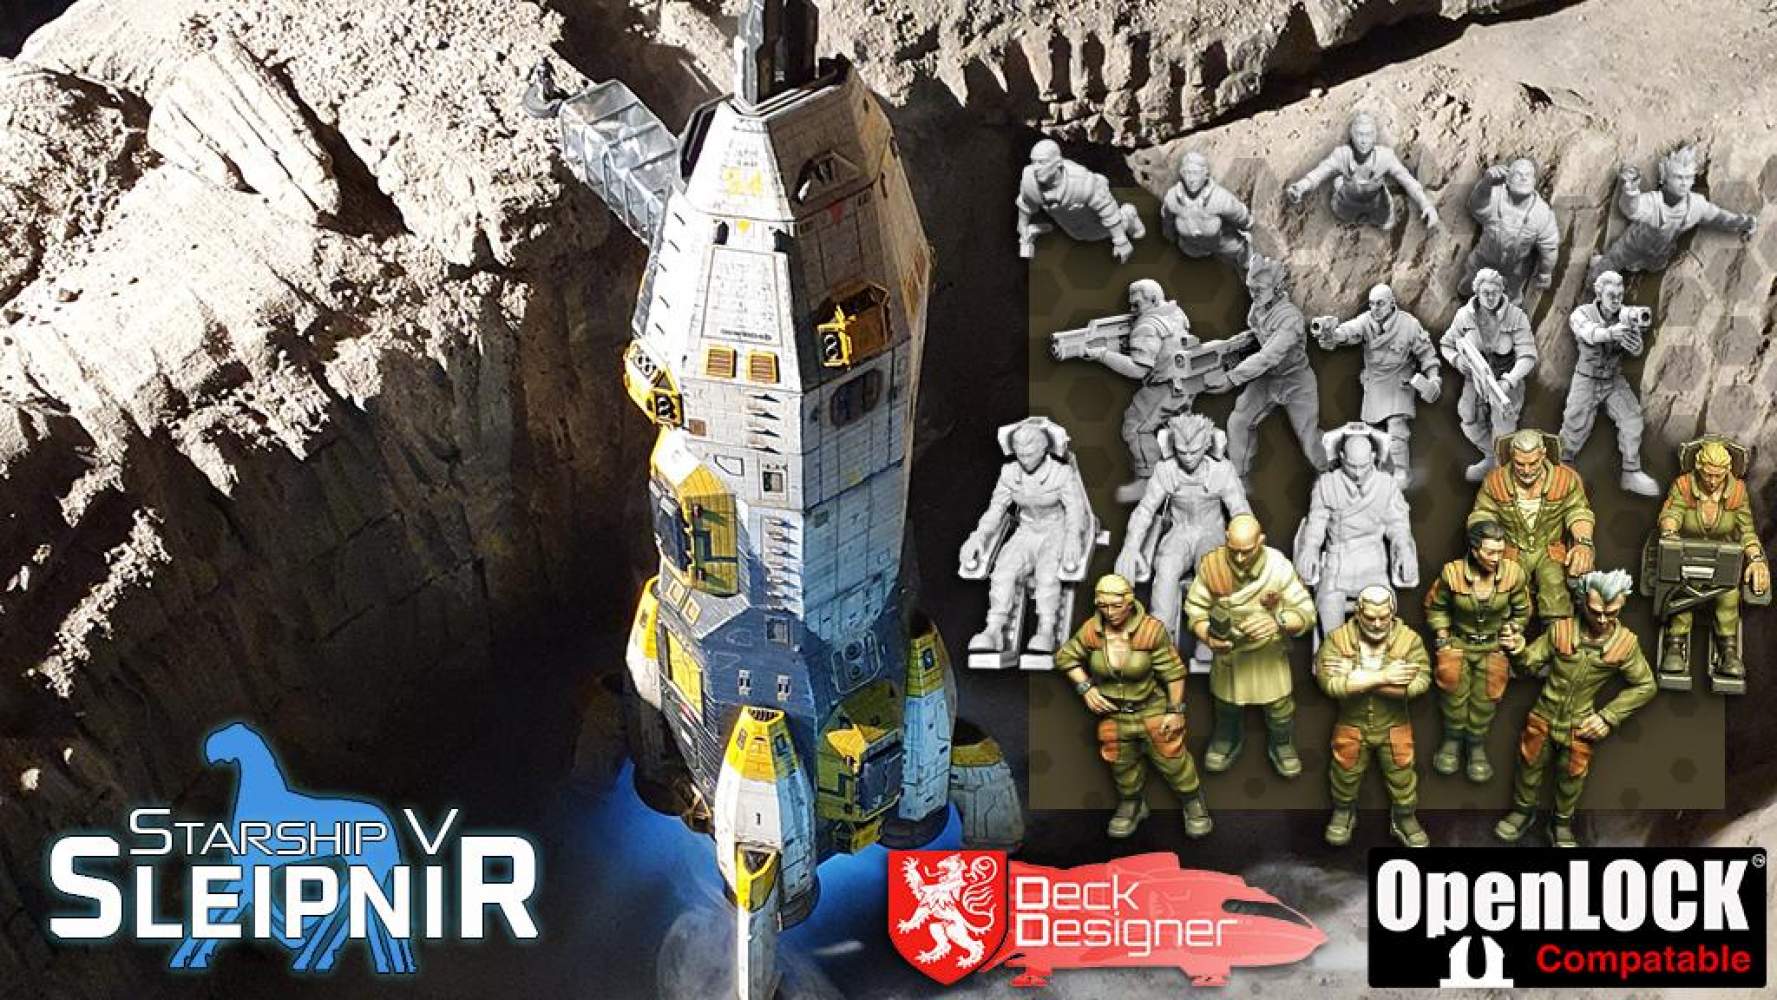 Starship V - Sleipnir, Crew Miniatures and Deck Designer